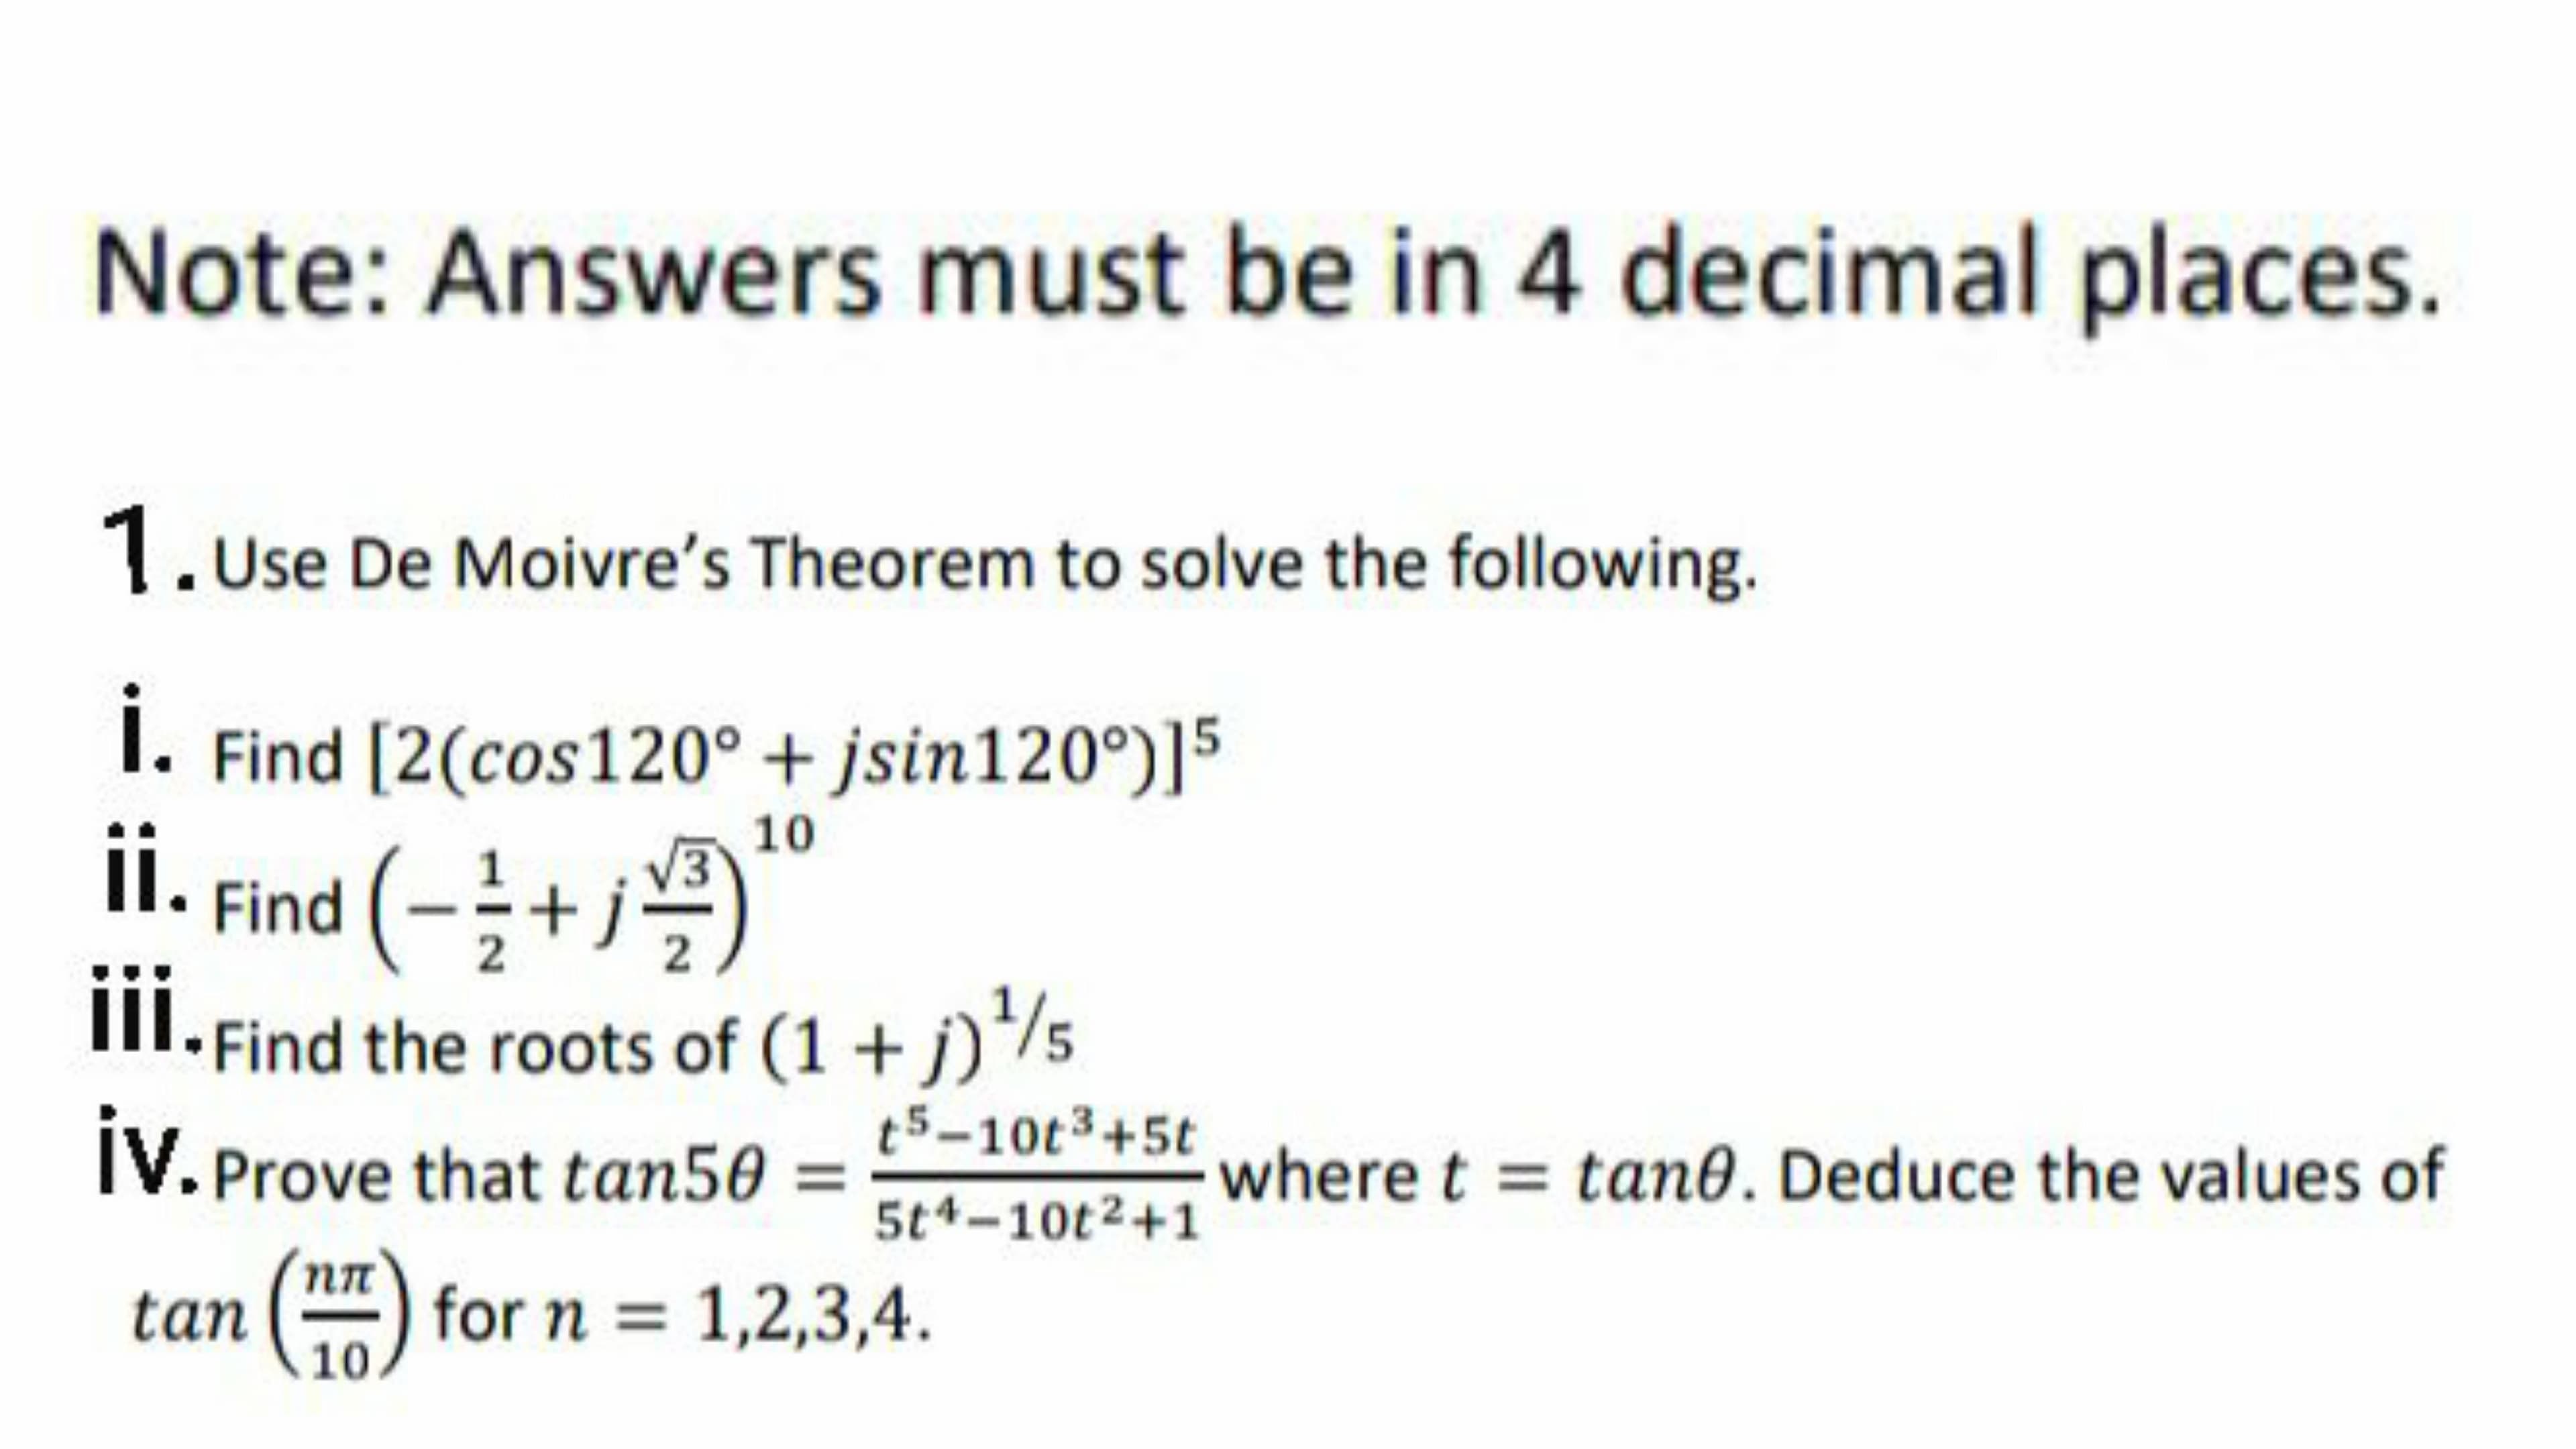 . Use De Moivre's Theorem to se
